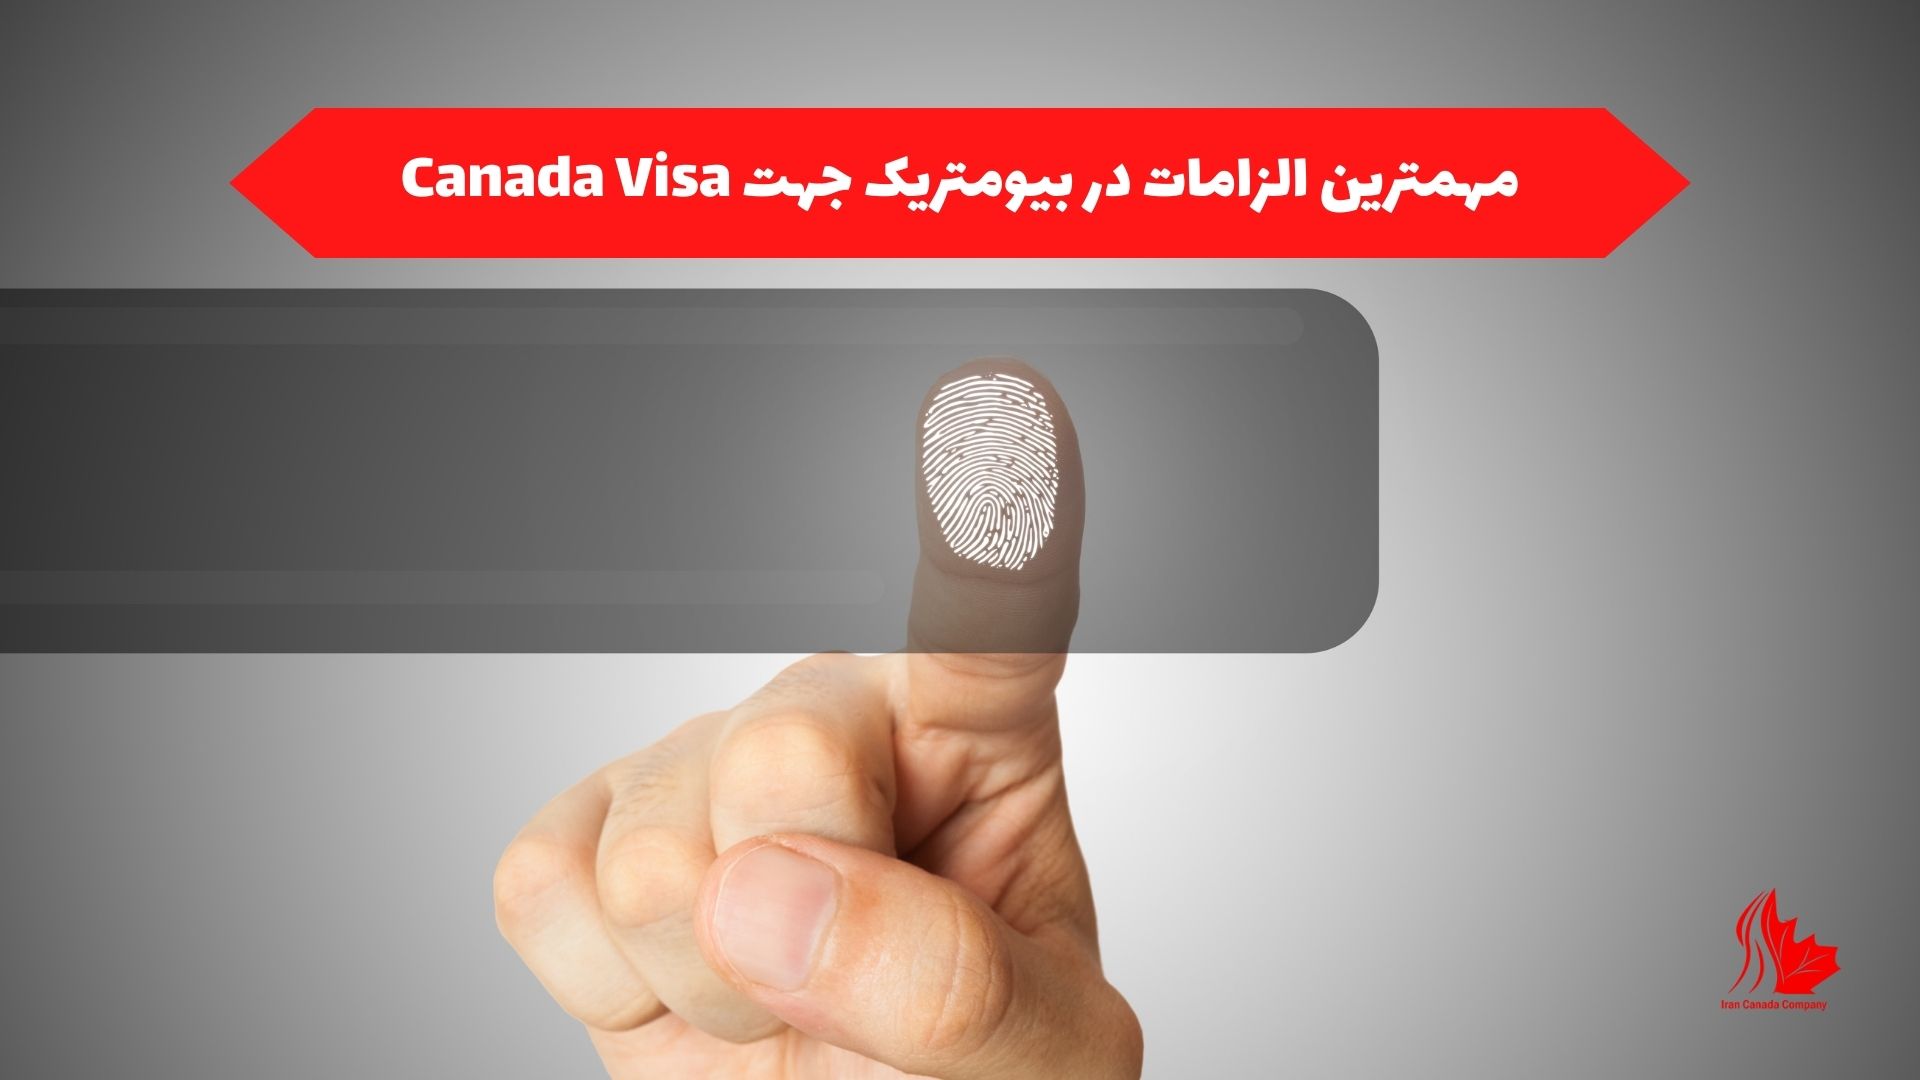 مهمترین الزامات در بیومتریک جهت Canada Visa